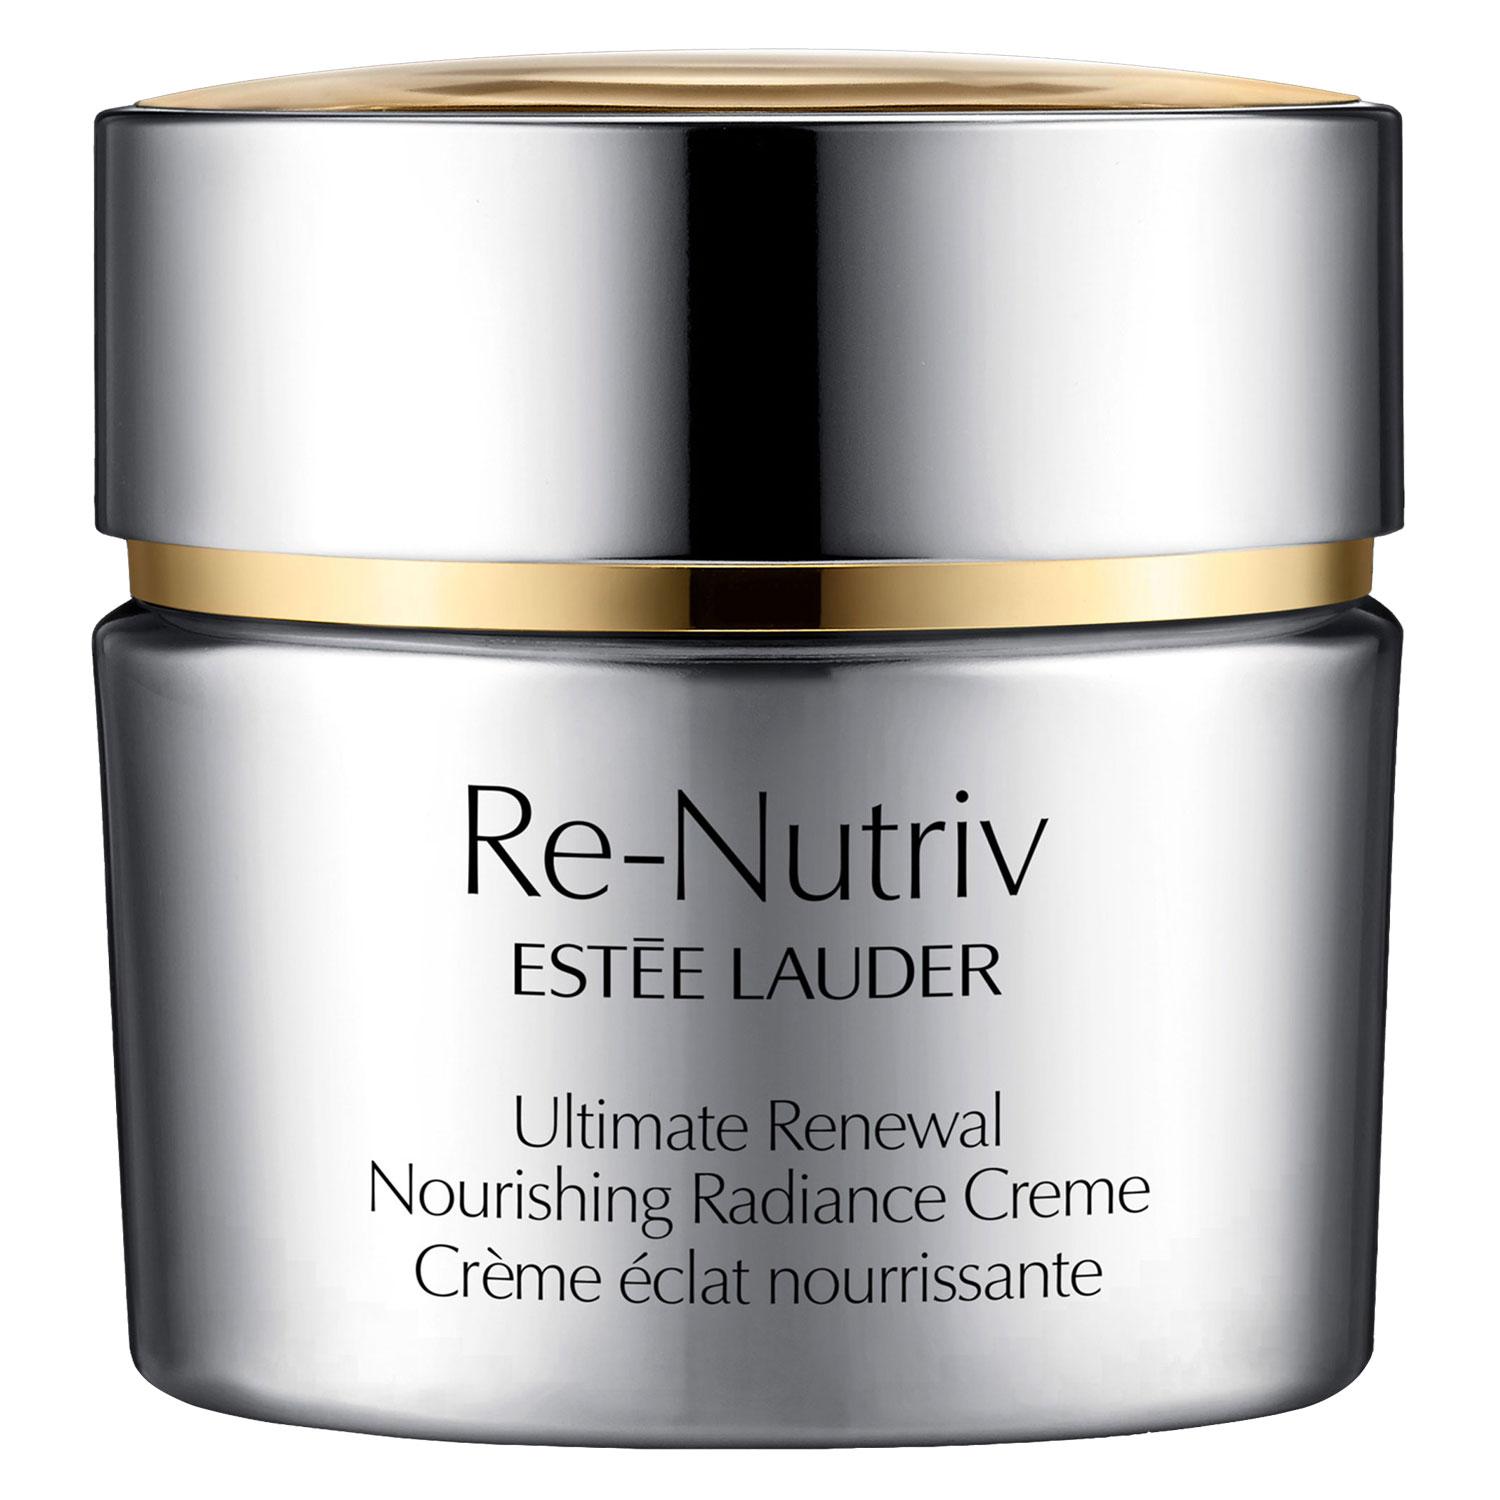 Re-Nutriv - Ultimate Renewal Nourishing Radiance Creme